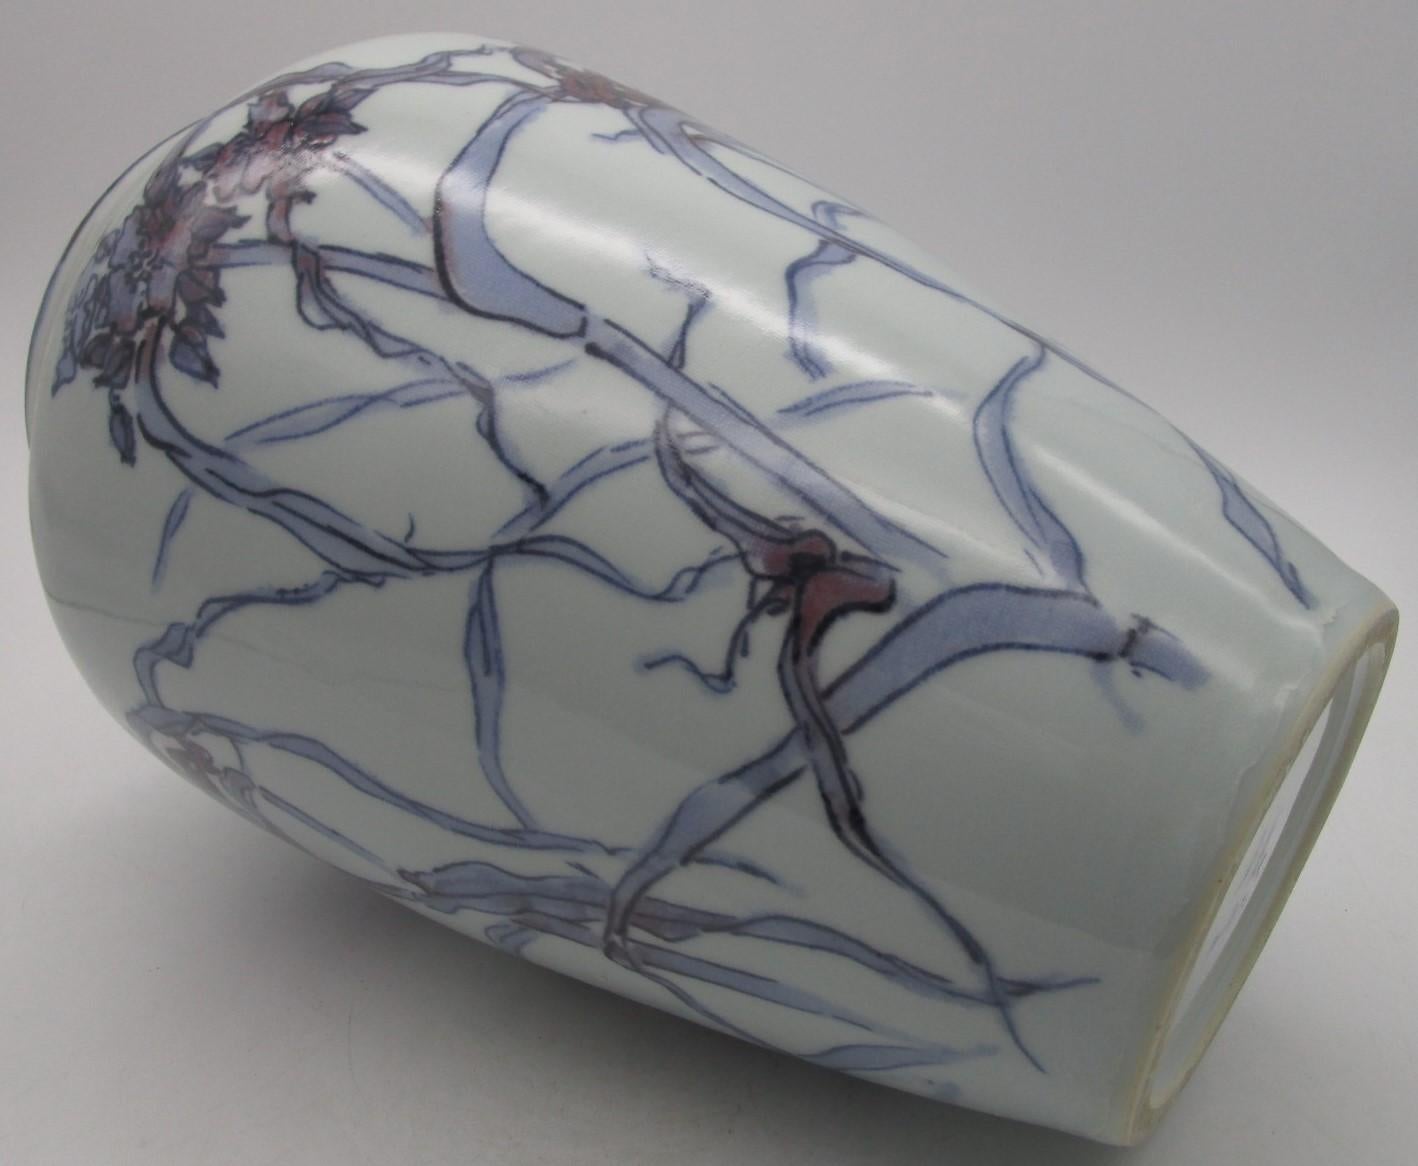 Japanische dekorative Porzellanvase aus der Mitte des 20. Jahrhunderts, signiert (um 1935), aus der Showa-Periode (1926 bis 1985). Sie zeigt ein attraktives Distelmotiv, eine elegante Szene, handgemalt in Violett und Unterglasurblau auf rein weißem